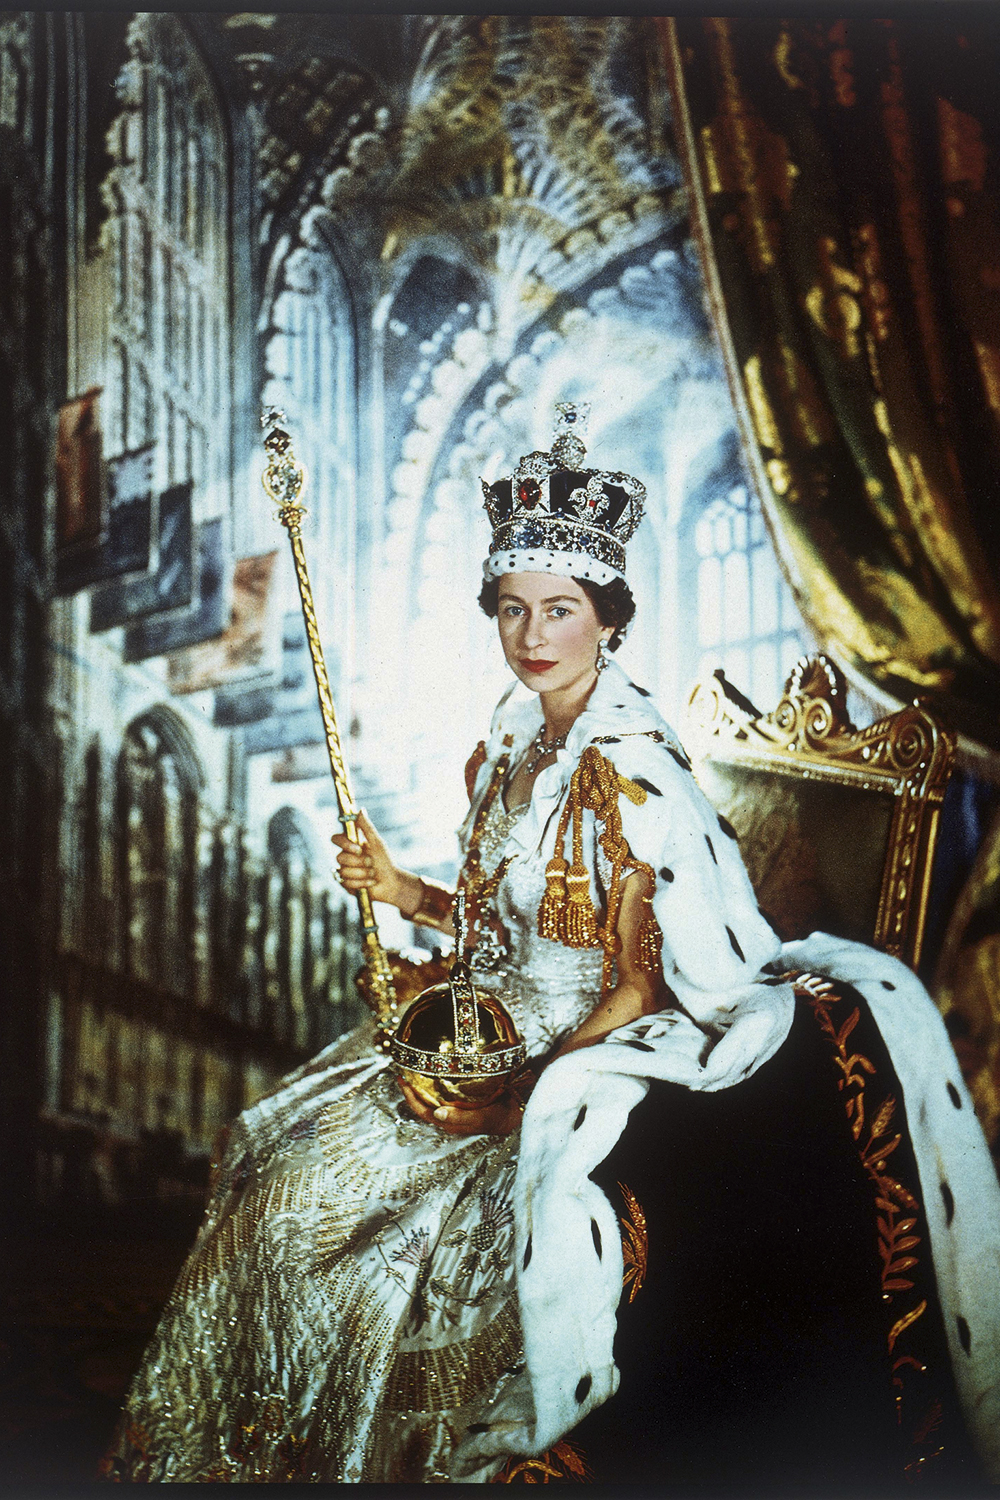 SENHORA DO TEMPO - Elizabeth II na sua coroação: chance de cair e levantar